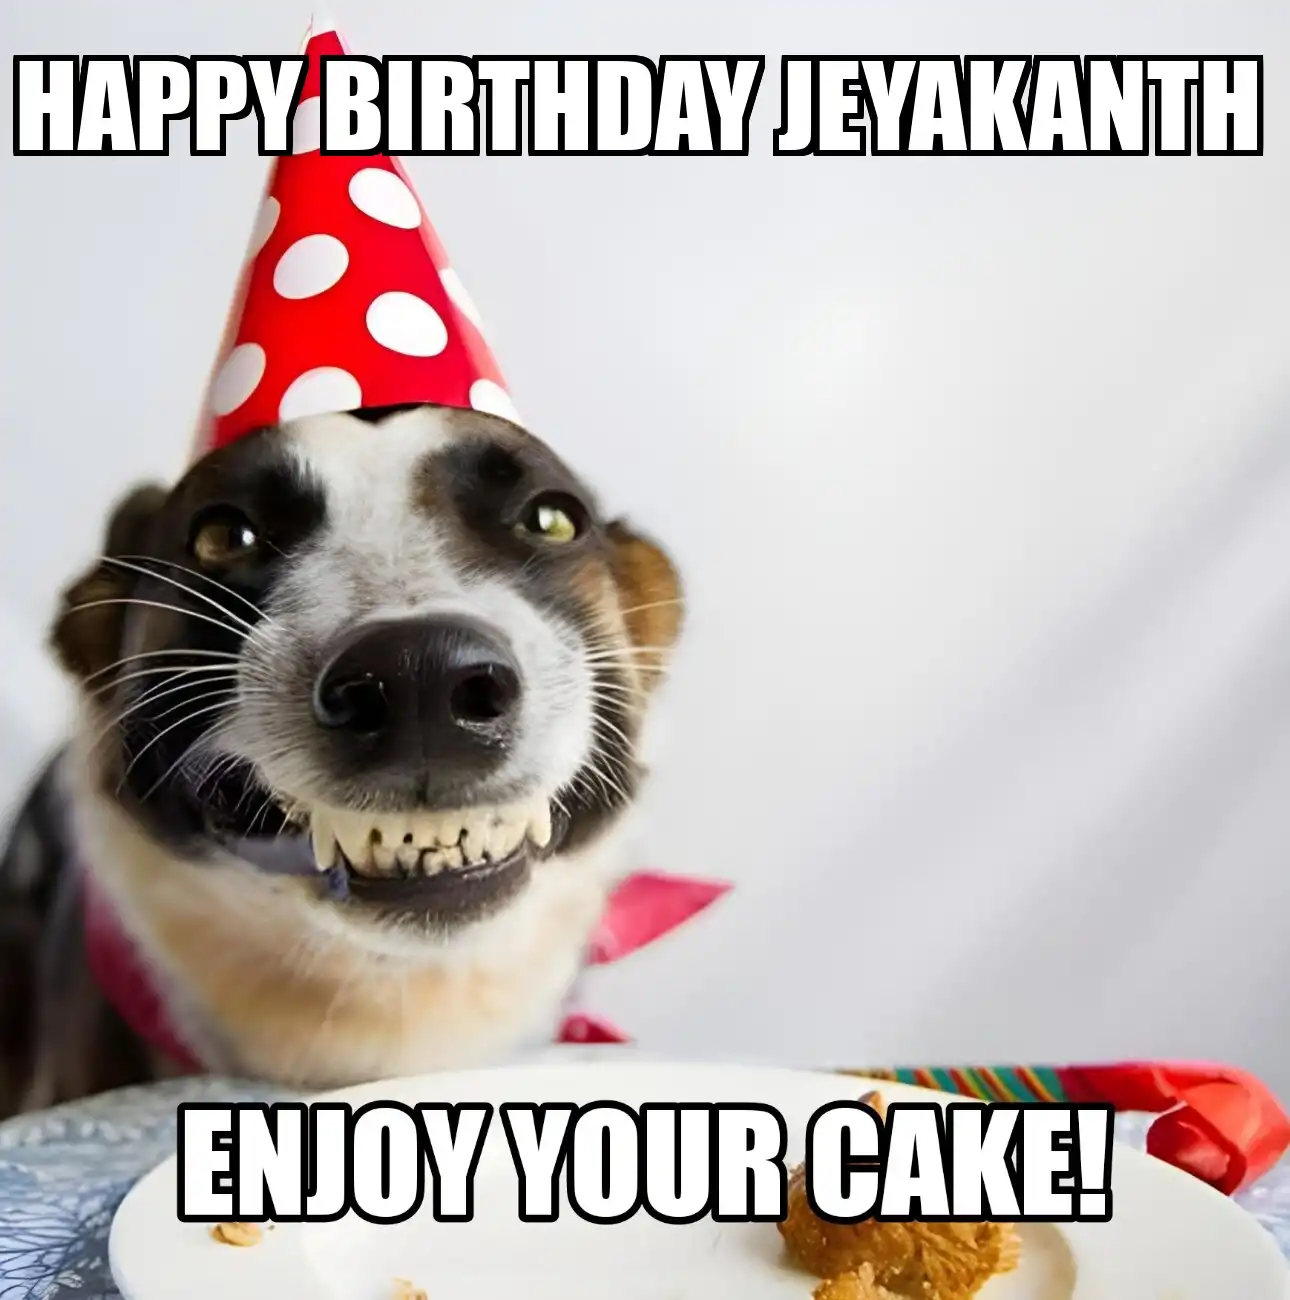 Happy Birthday Jeyakanth Enjoy Your Cake Dog Meme